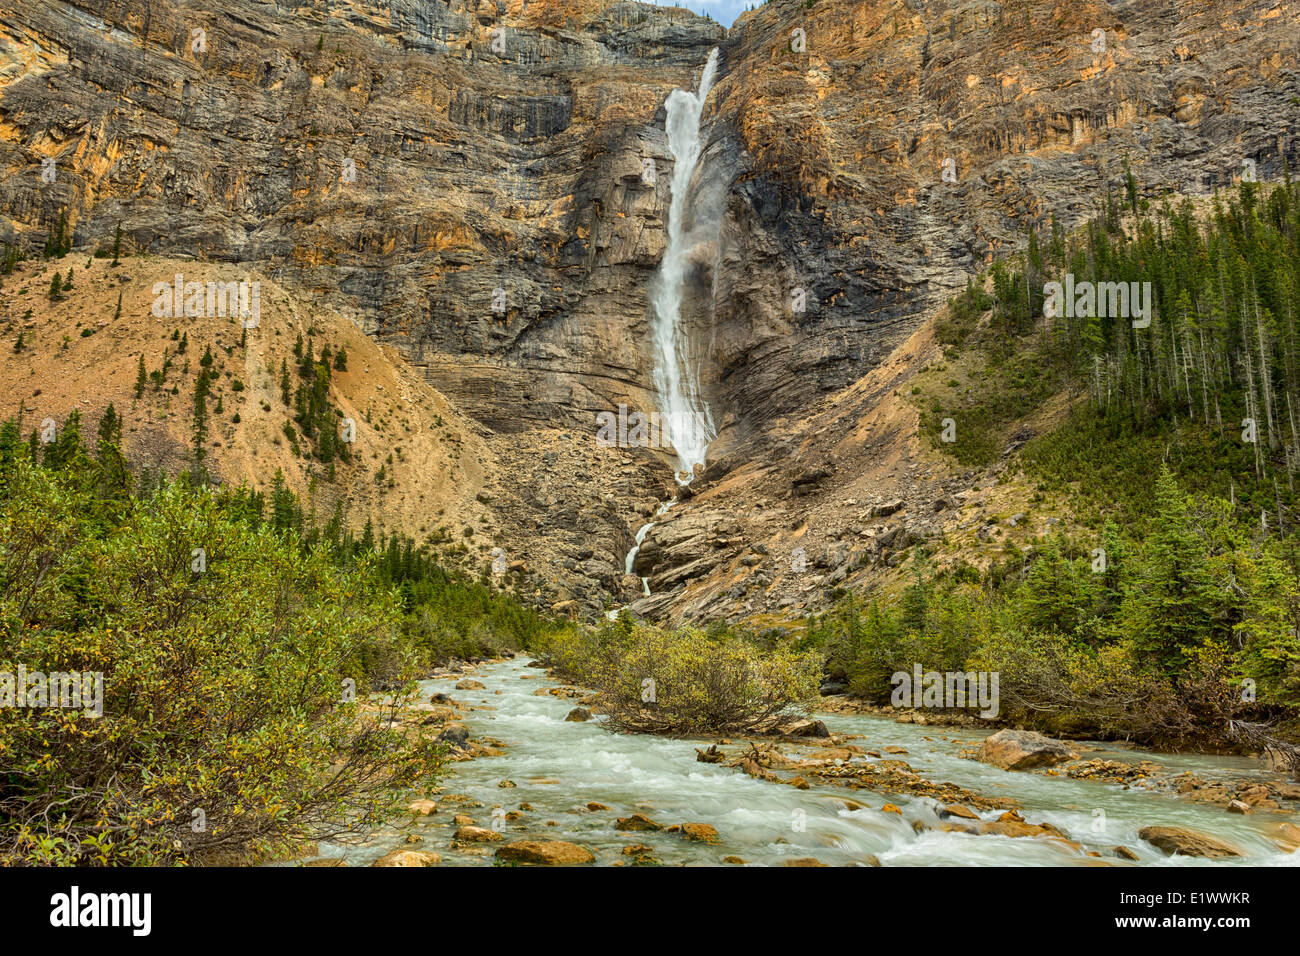 Les chutes Takakkaw, Parc national Yoho, Colombie-Britannique, Canada Banque D'Images